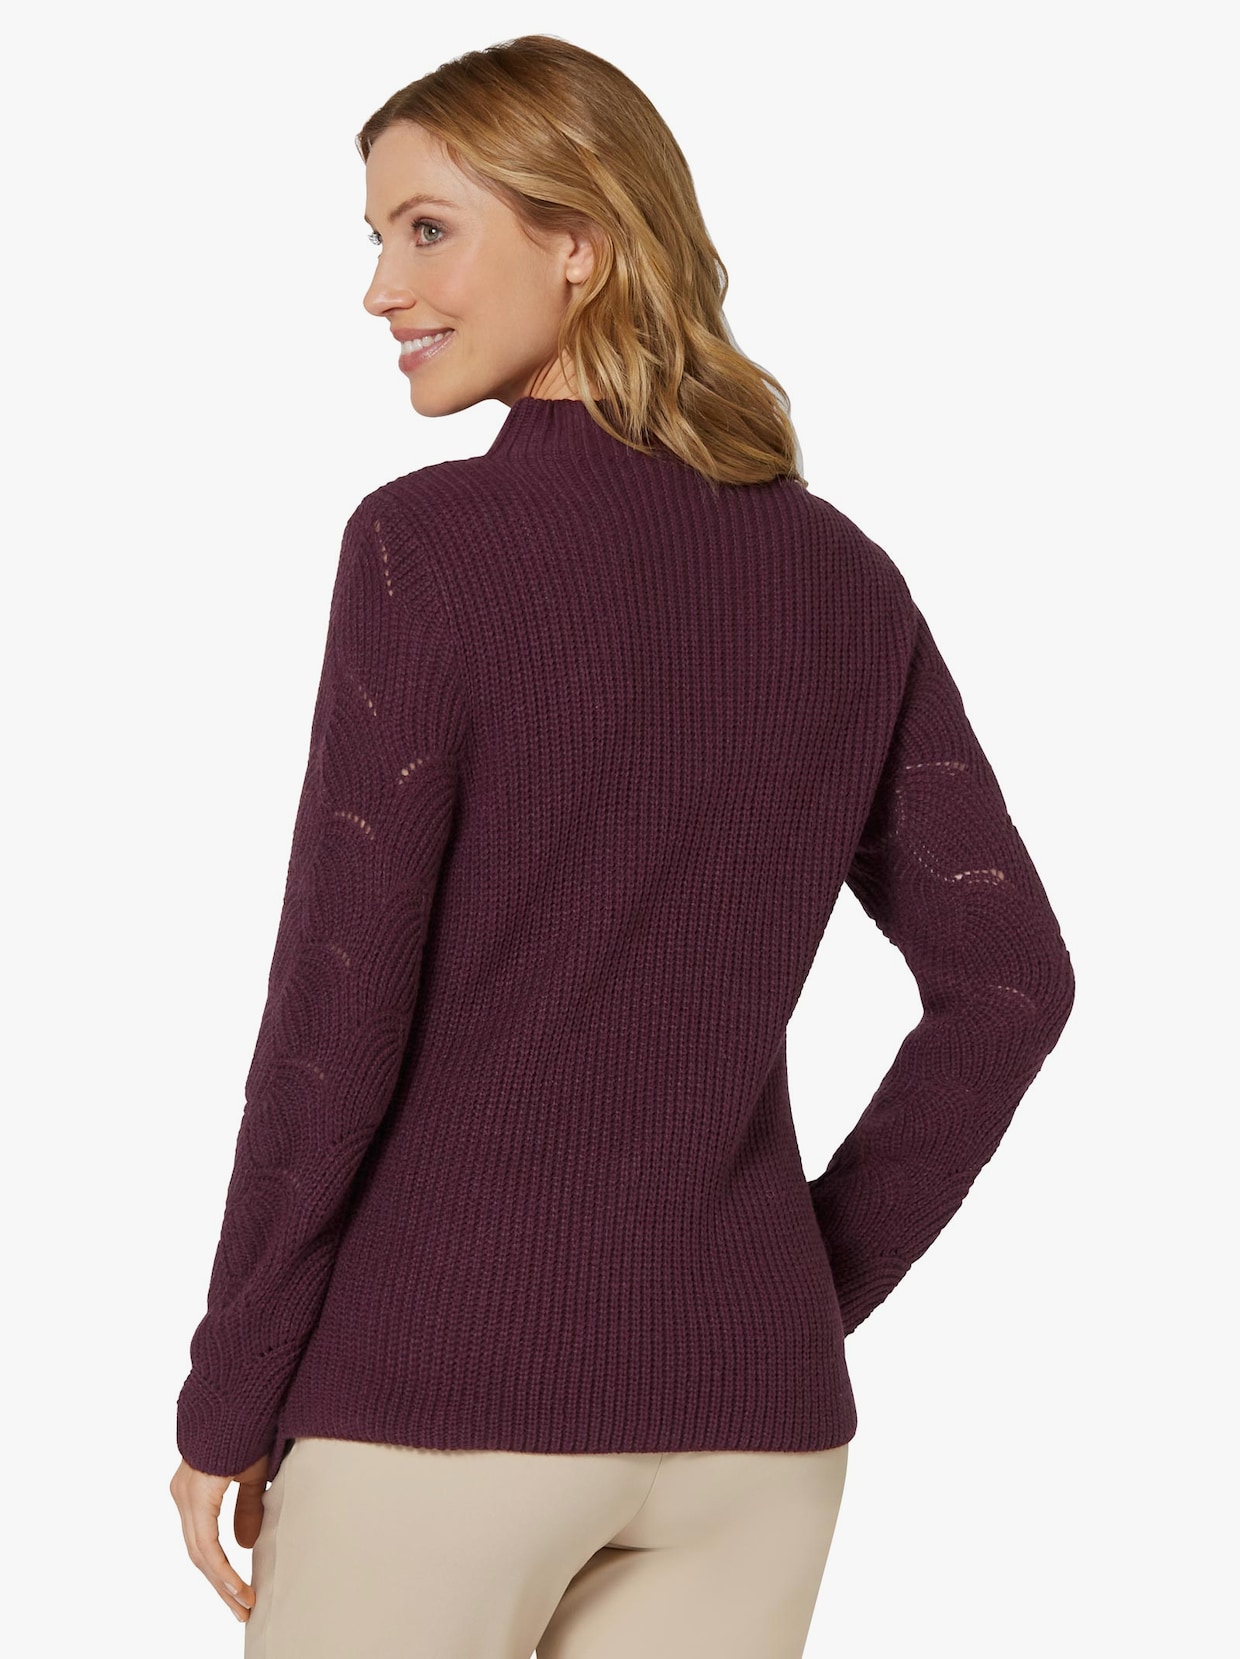 Langarm-Pullover - burgund